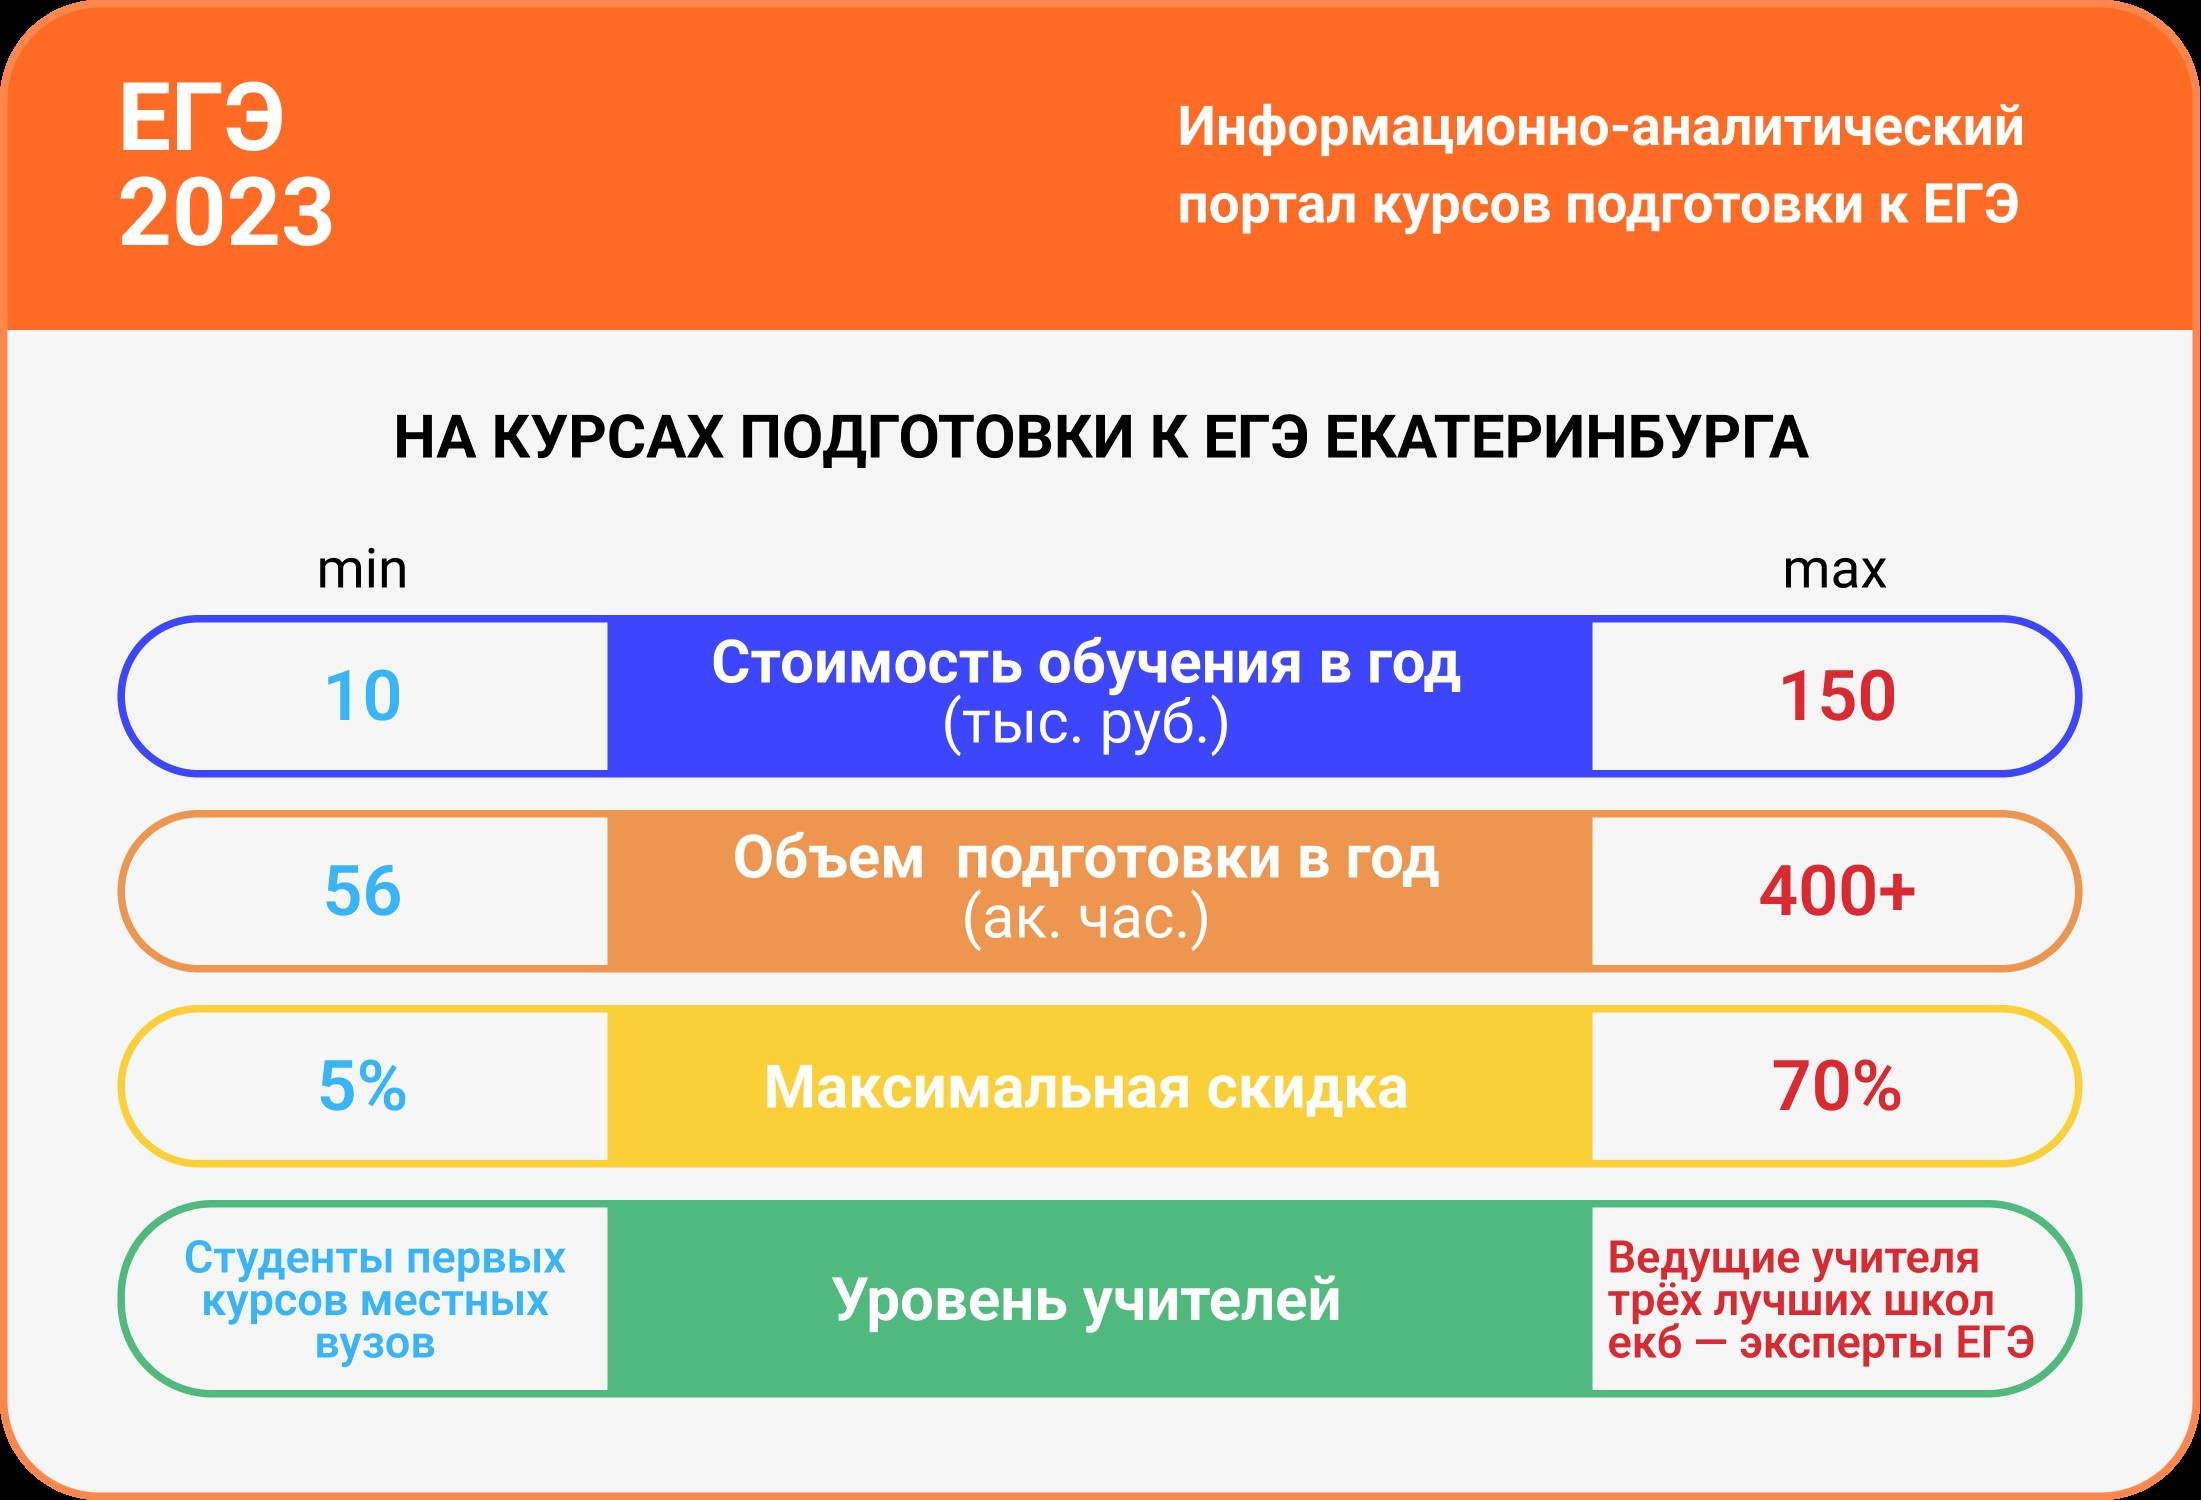 В Екатеринбурге действует около 30 курсов подготовки к ЕГЭ: сколько времени нужно, чтобы просто найти их сайты и сравнить условия — это нереально